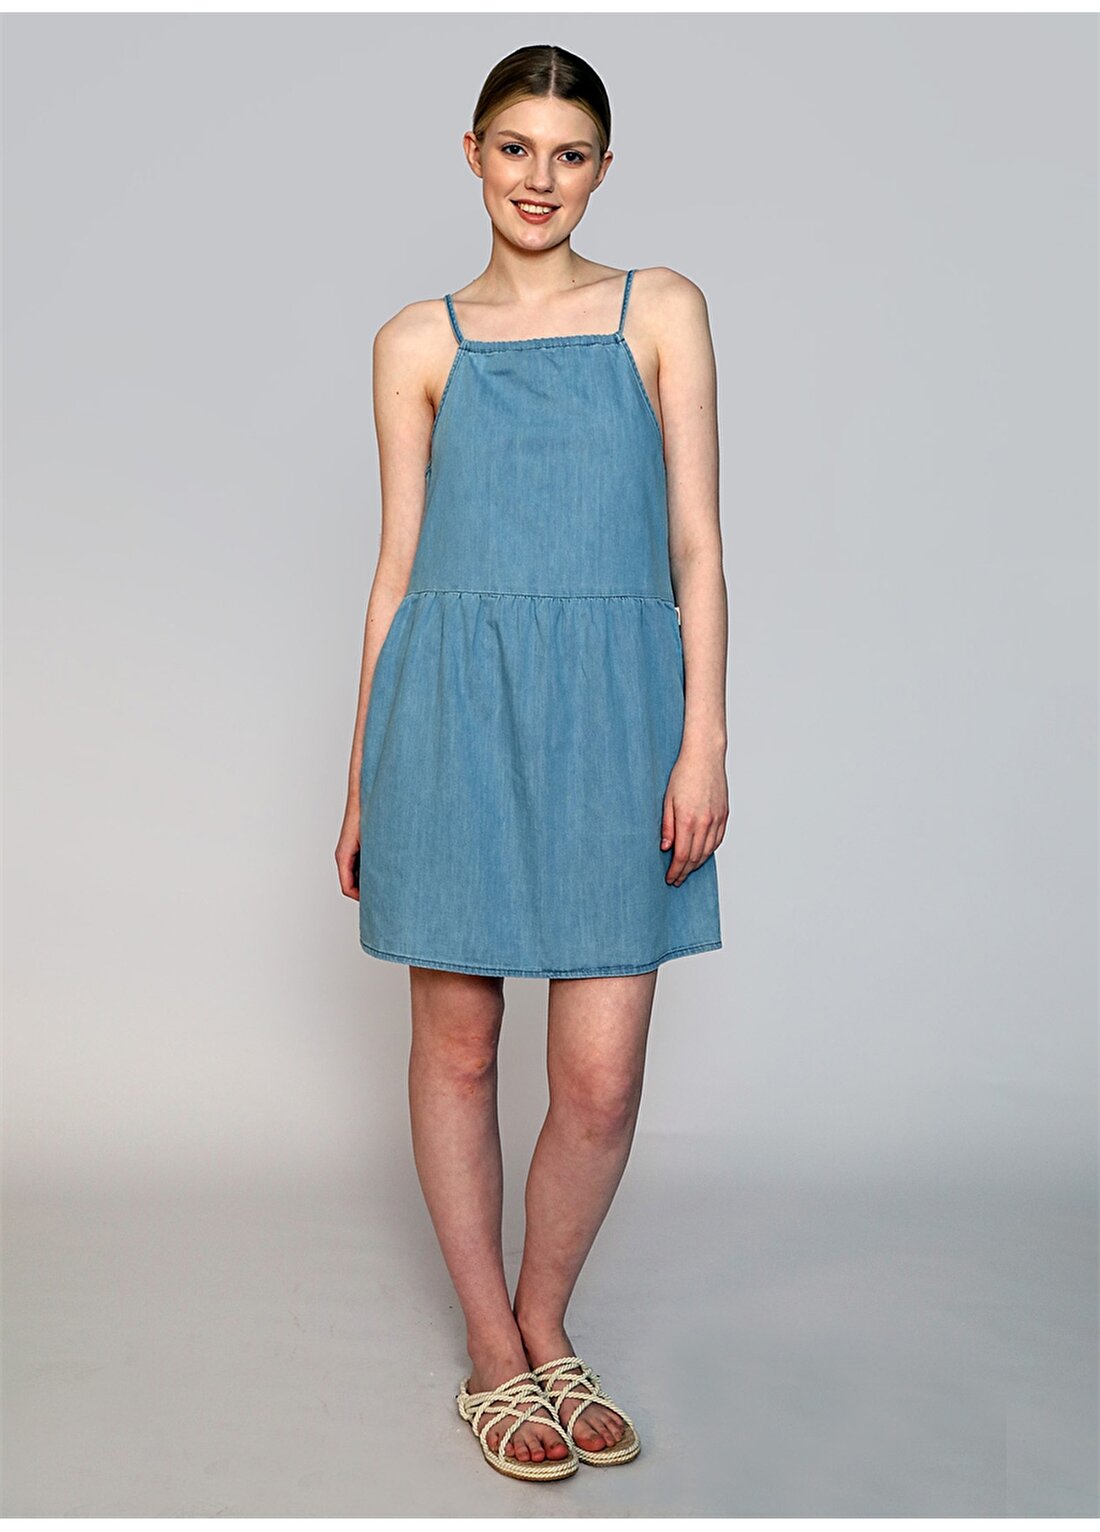 Lee Cooper Kare Yaka Düz Mavi Diz Üstü Kadın Elbise 242 LCF 144004 MARDY DENIM